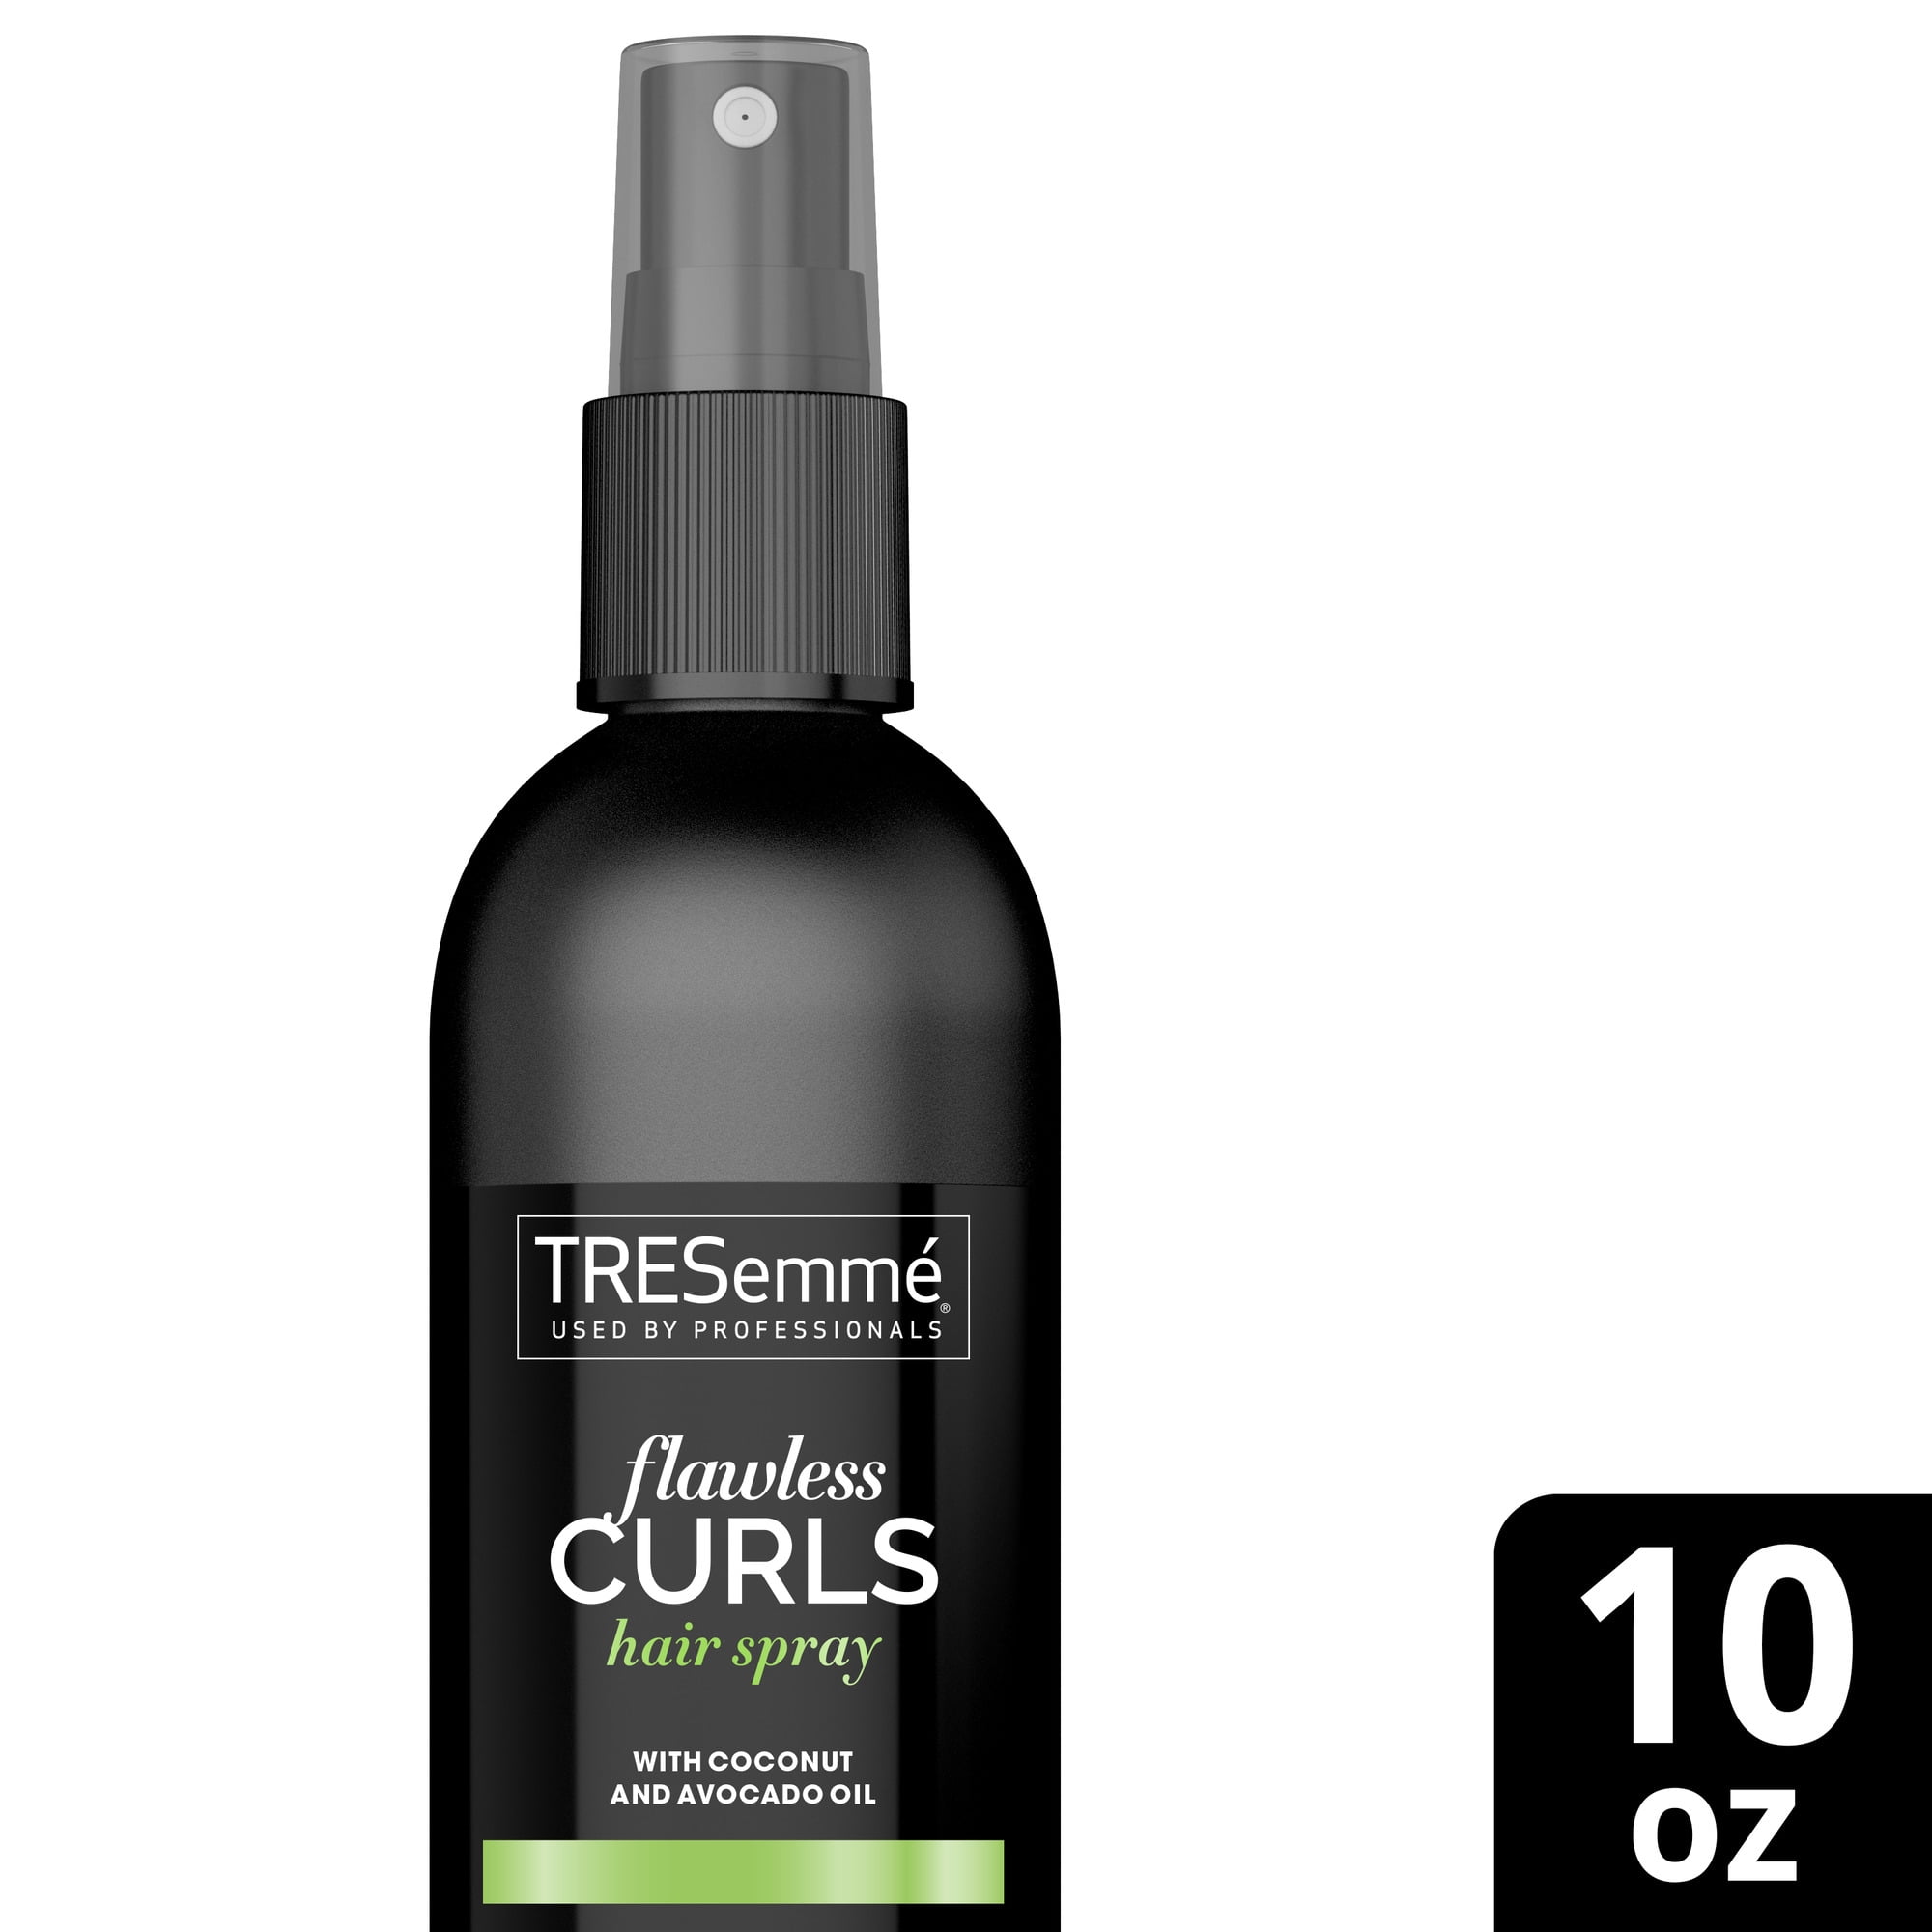 Tresemme Flawless Curls Non-Aerosol Hair Spray, 10 oz